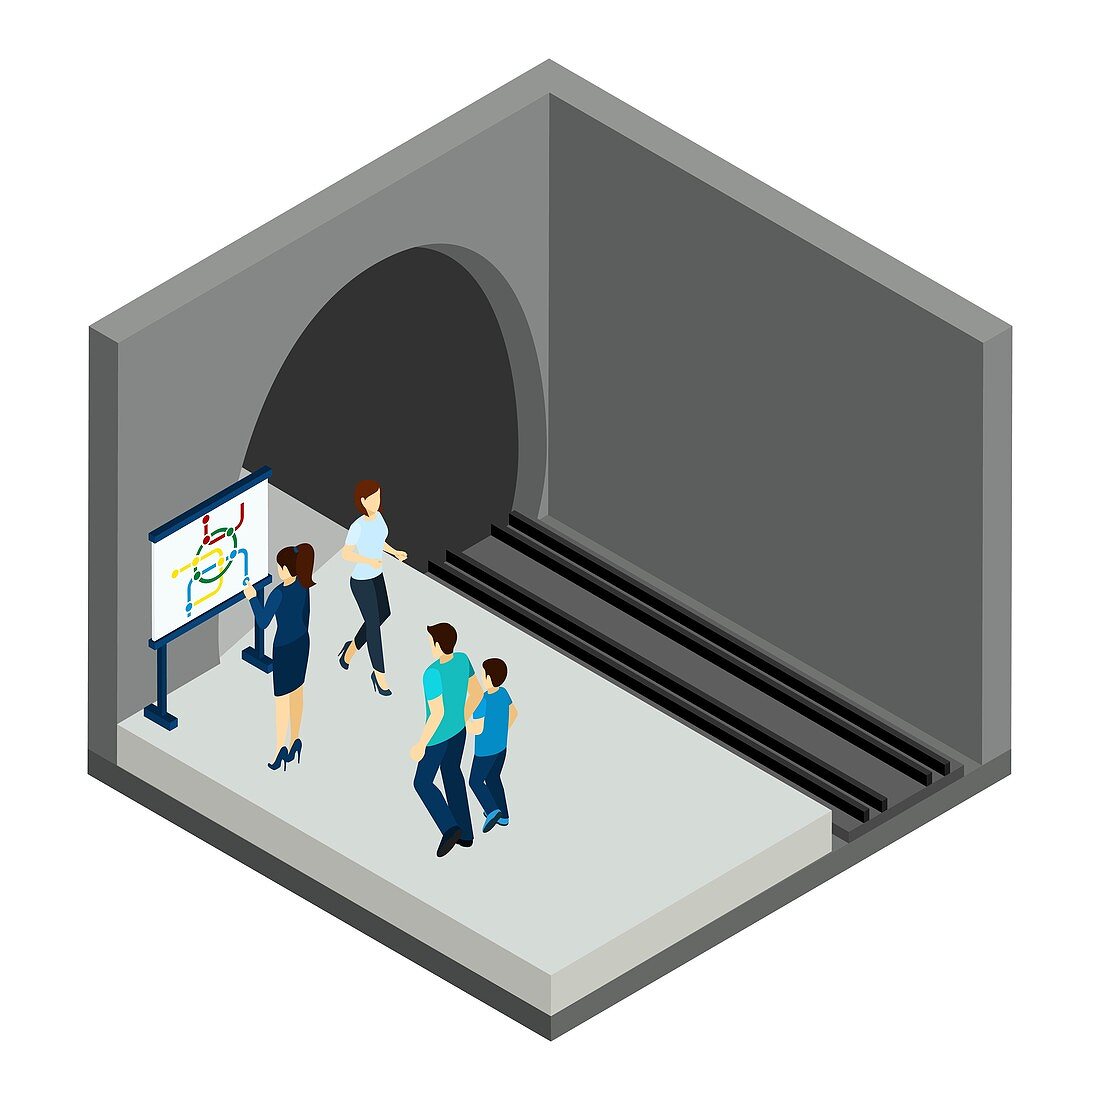 Underground train platform, illustration